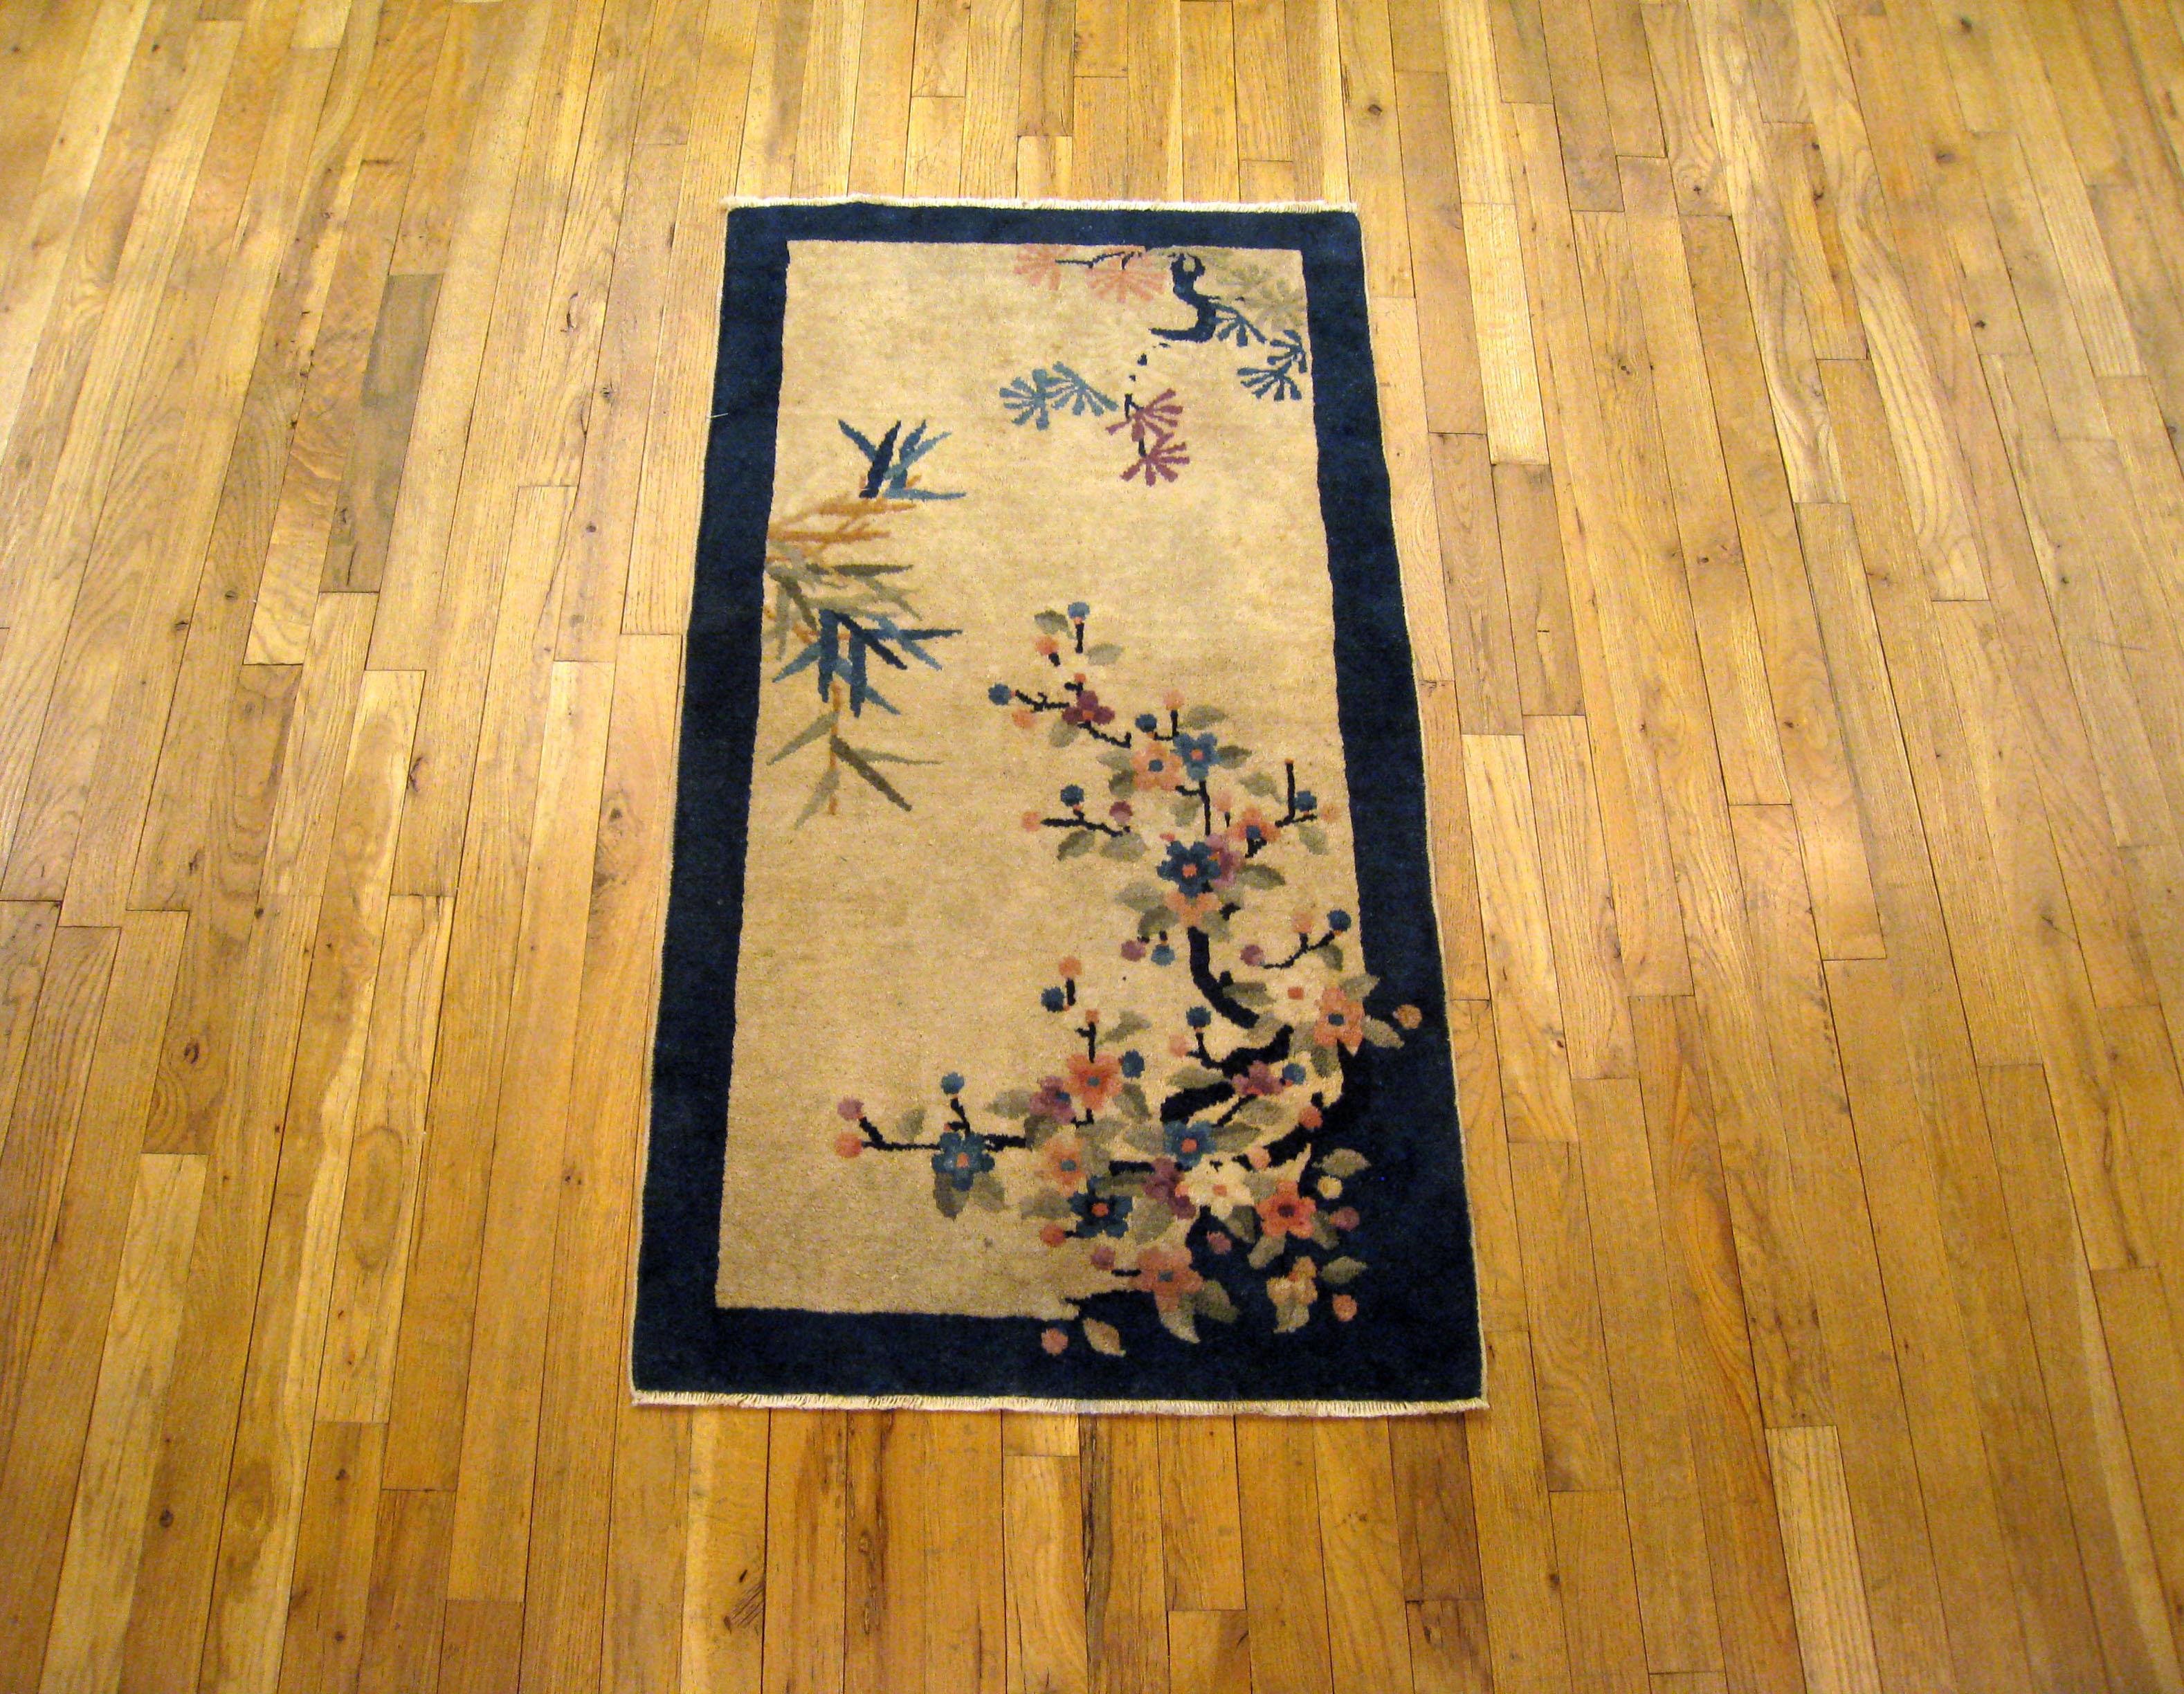 Un ancien tapis oriental chinois de Pékin, de dimensions 4'0 x 2'2, vers 1900. Ce joli tapis oriental noué à la main présente un champ central épuré caractérisé par des motifs de fleurs et d'arbres décentralisés sur un fond doux, enfermé dans une